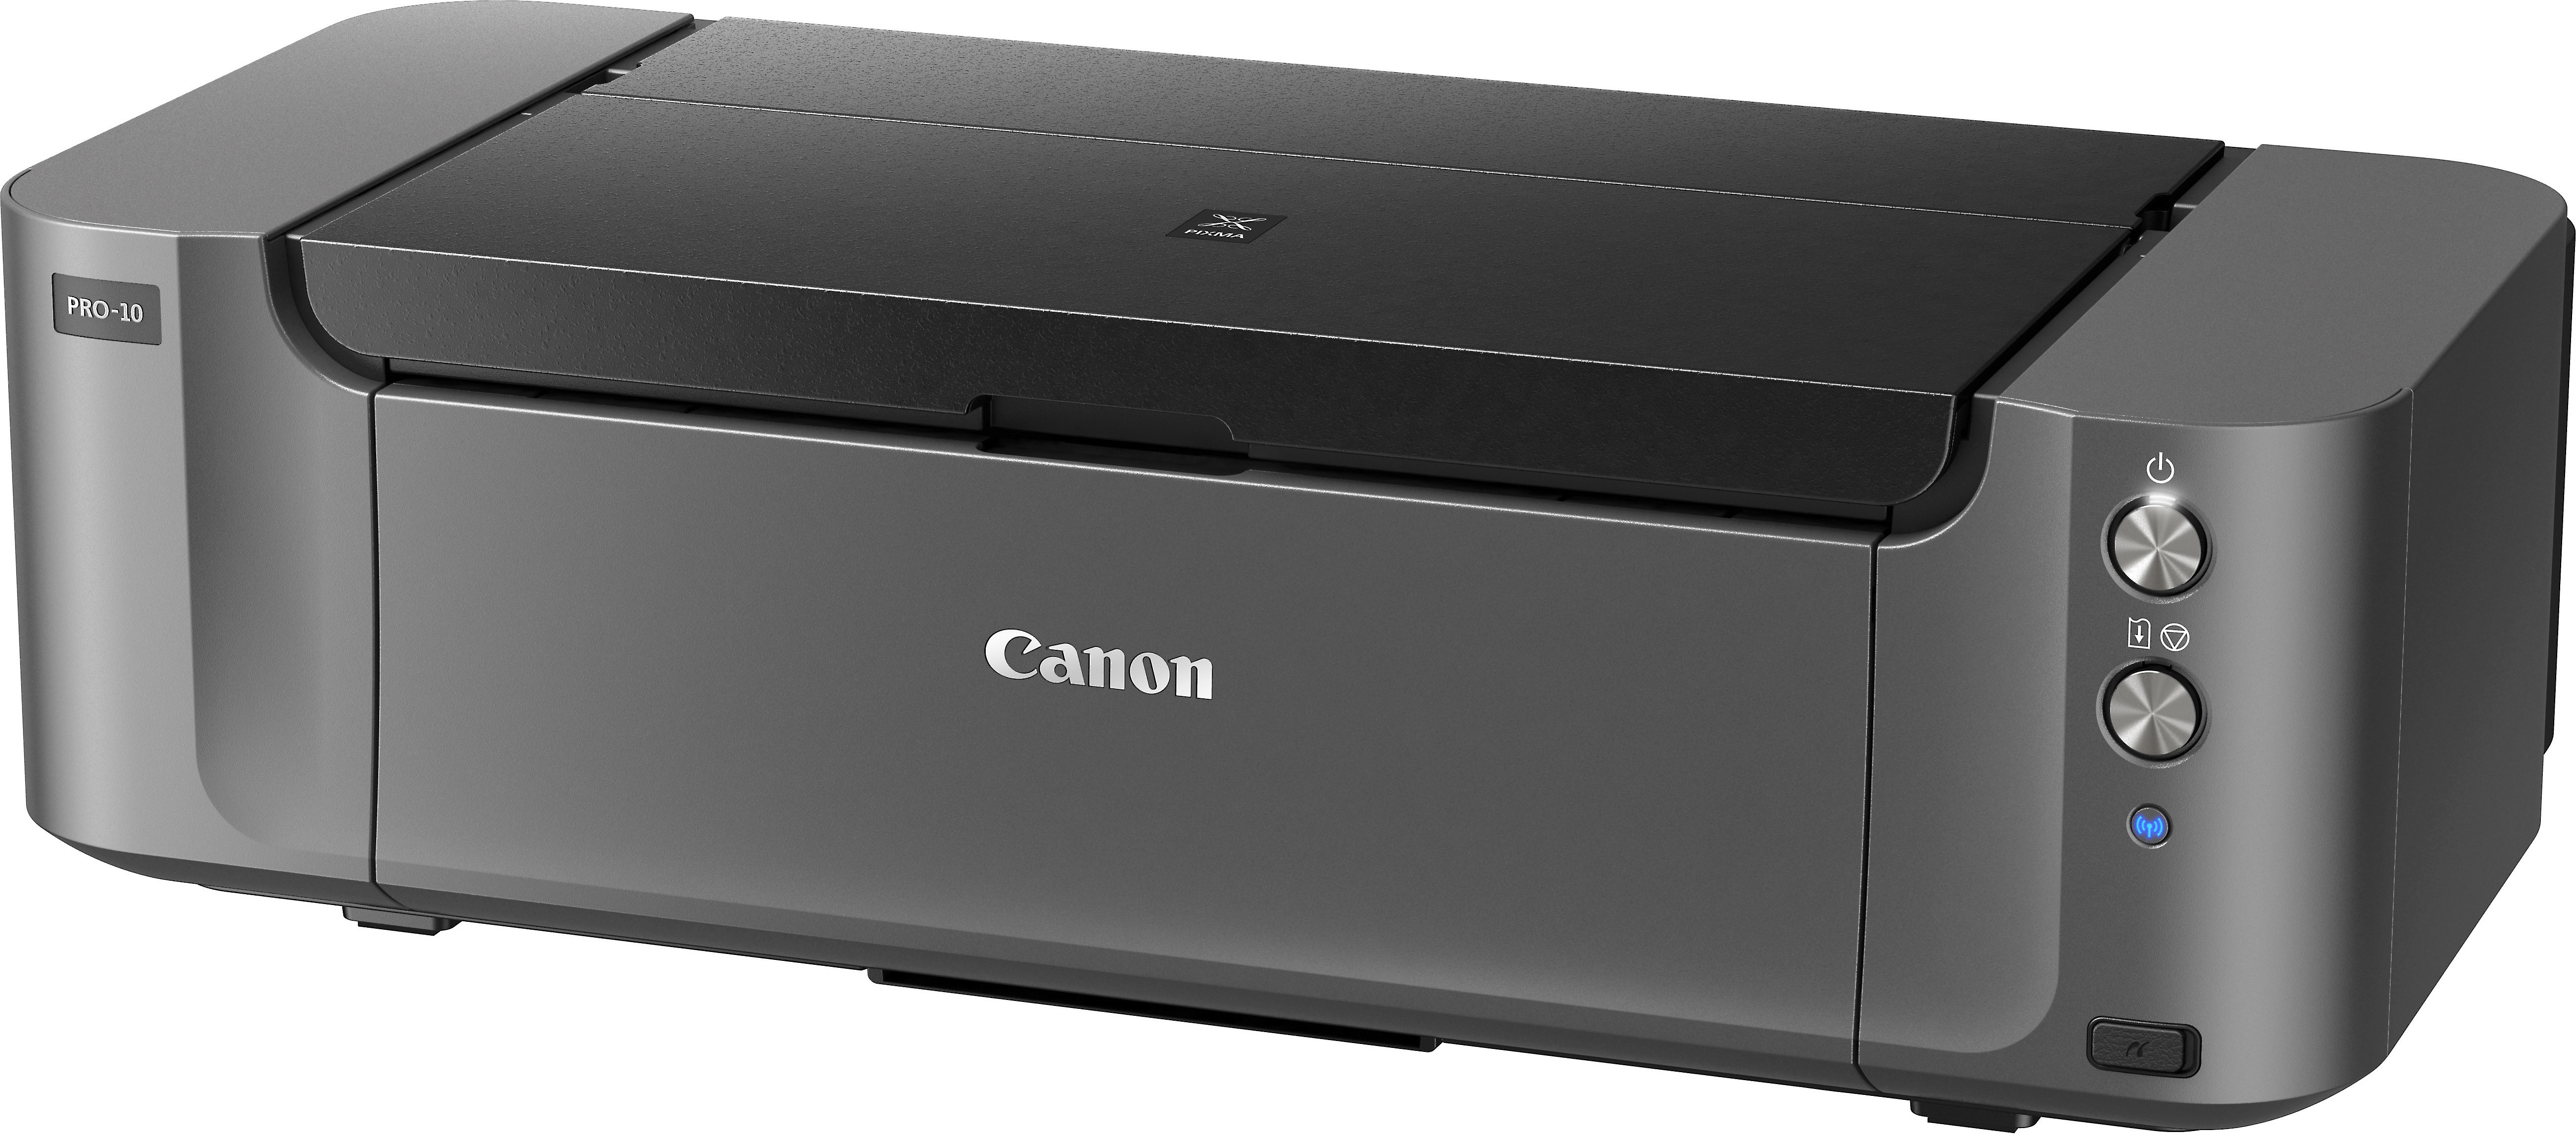 Canon PIXMA Pro-10 Wireless 10-color large-format photo printer at Crutchfield